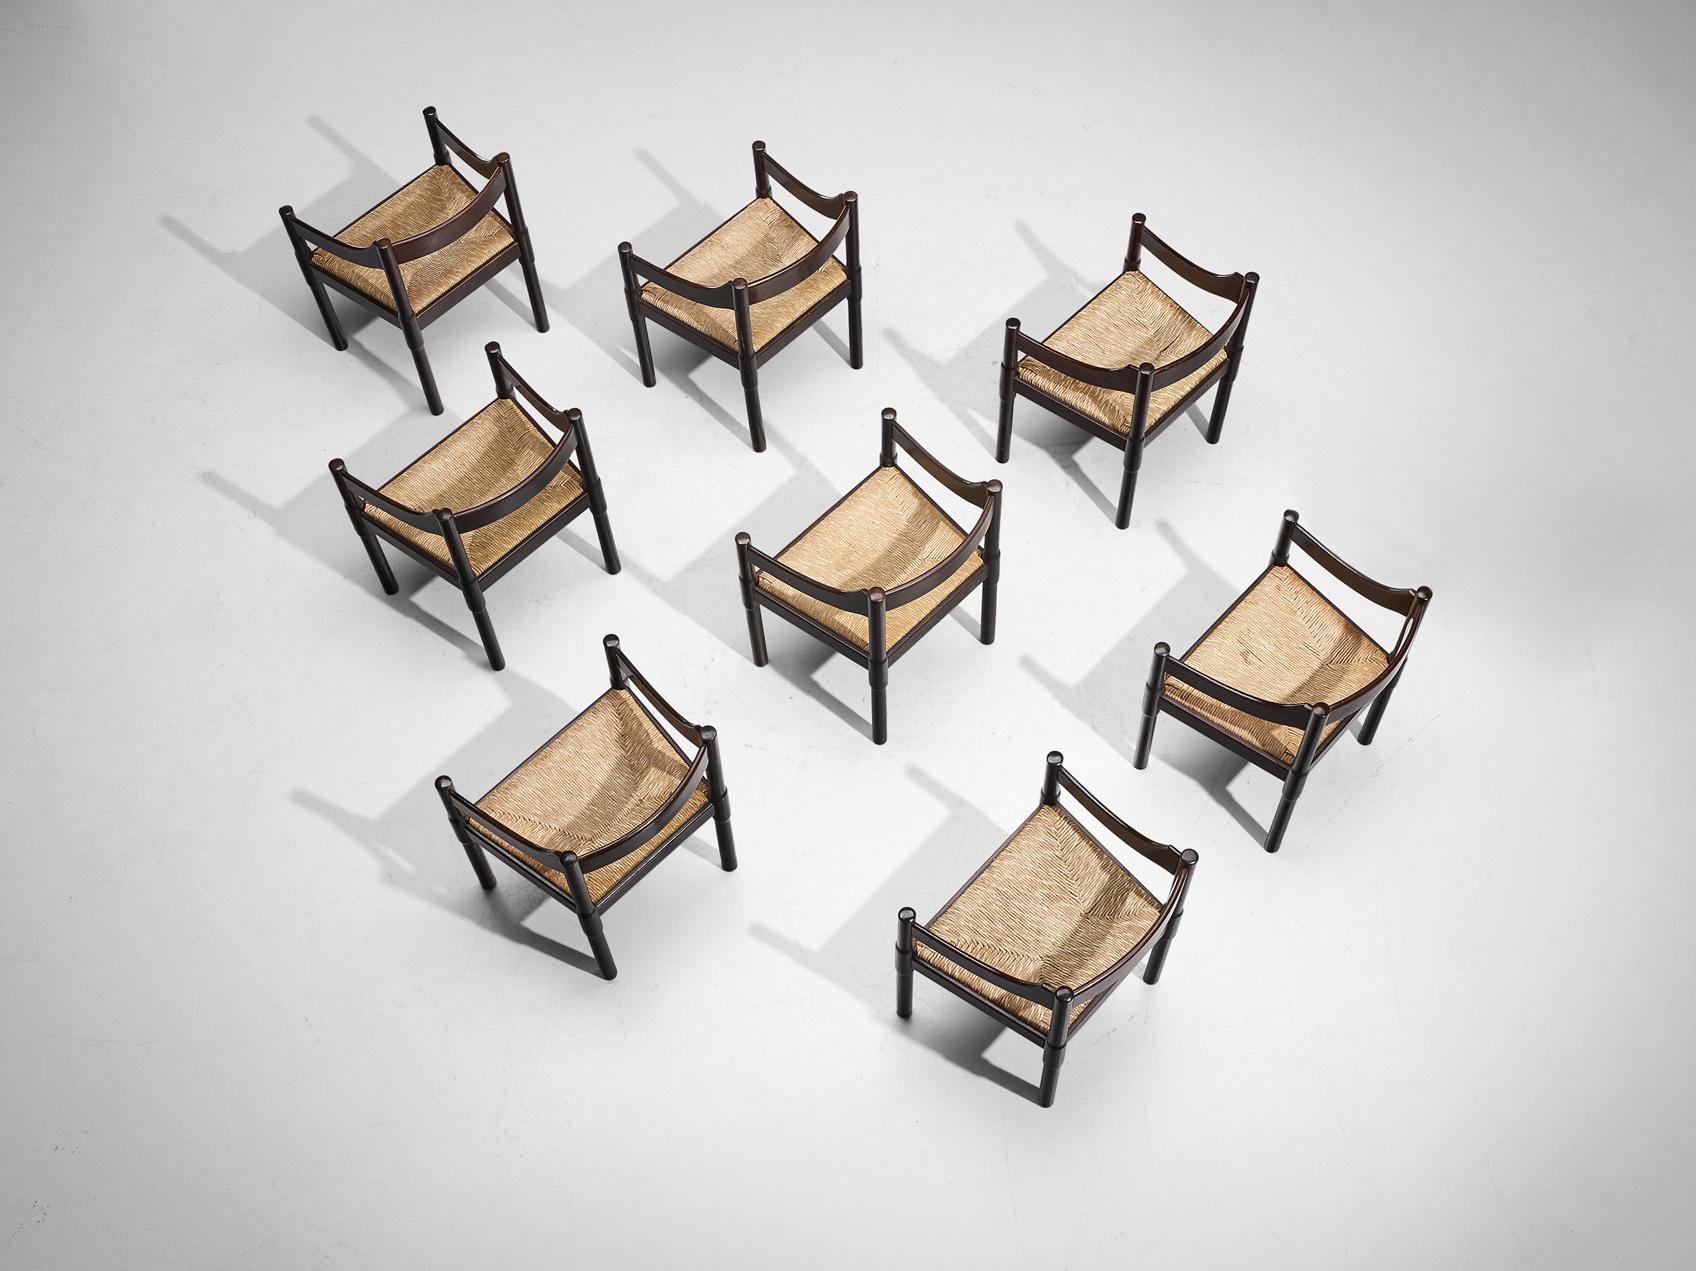 Vico Magistretti, ensemble de huit fauteuils 'Carimate', modèle '892', hêtre teinté, jonc, Italie, design 1963

La chaise 